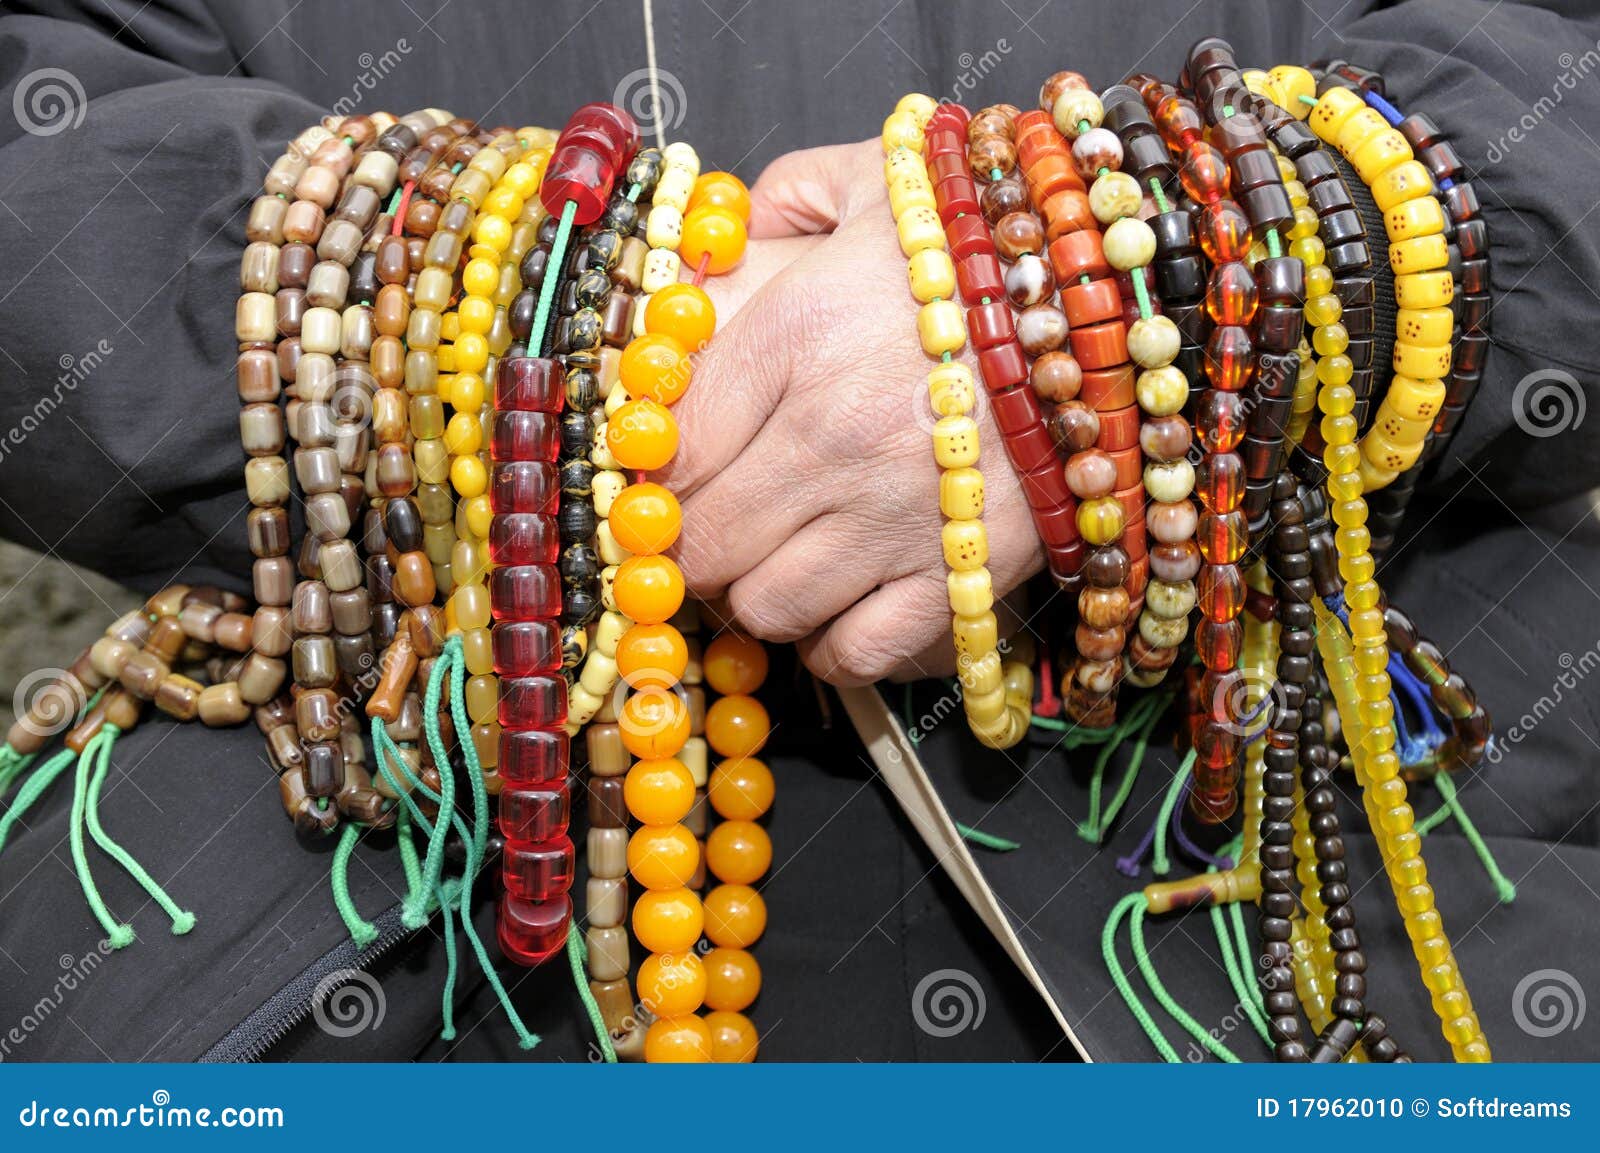 muslim with prayer beads